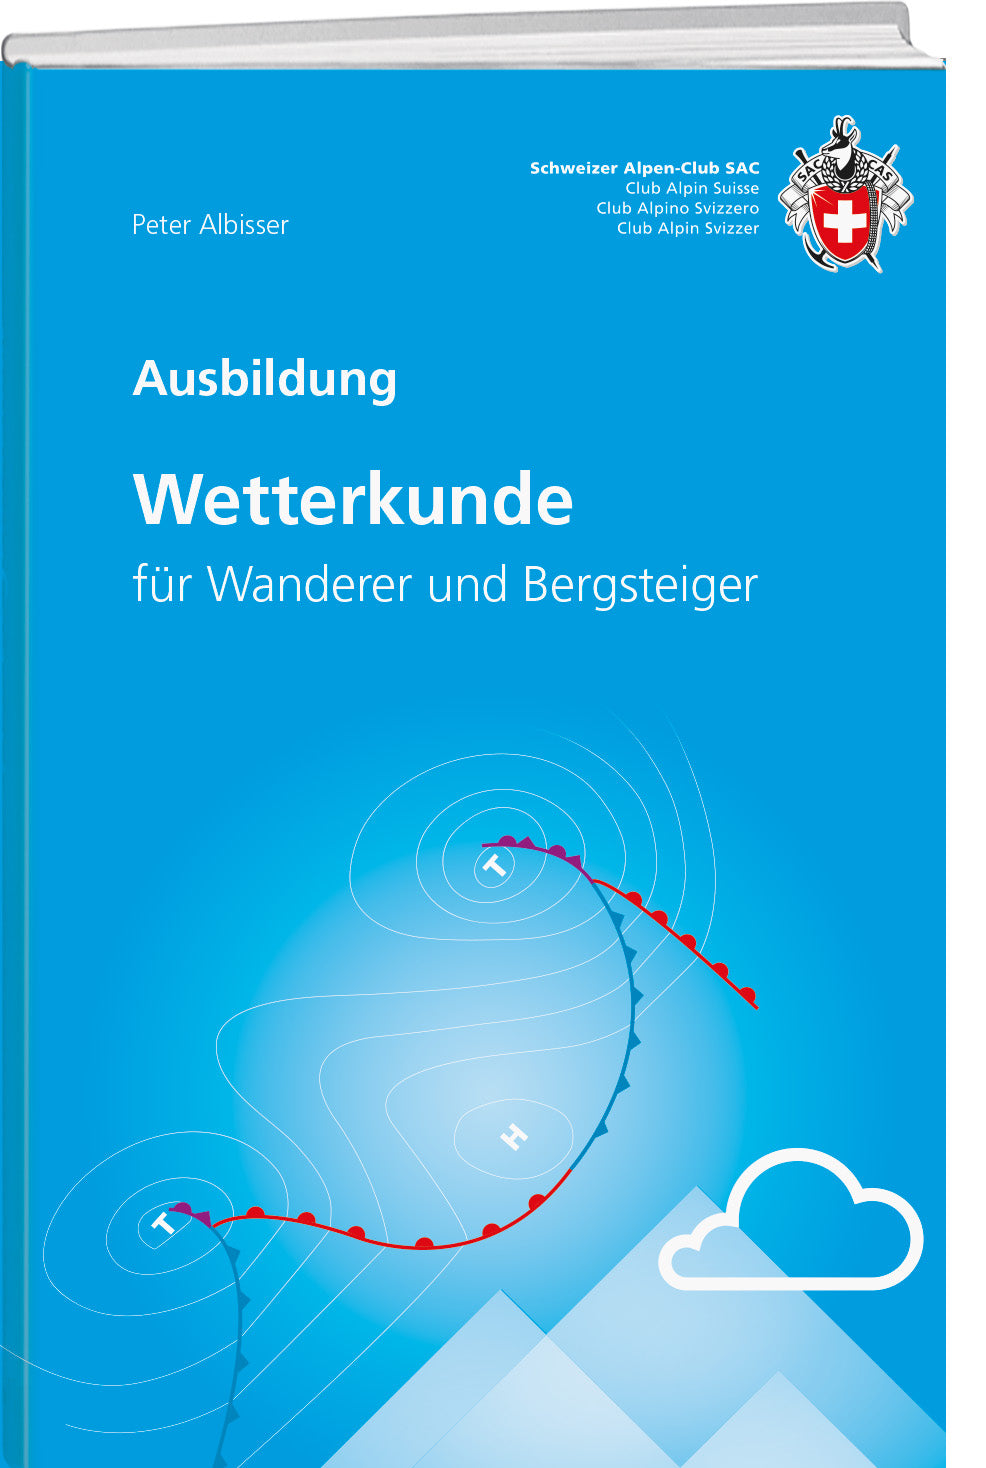 Peter Albisser: Wetterkunde - A WEBER VERLAG